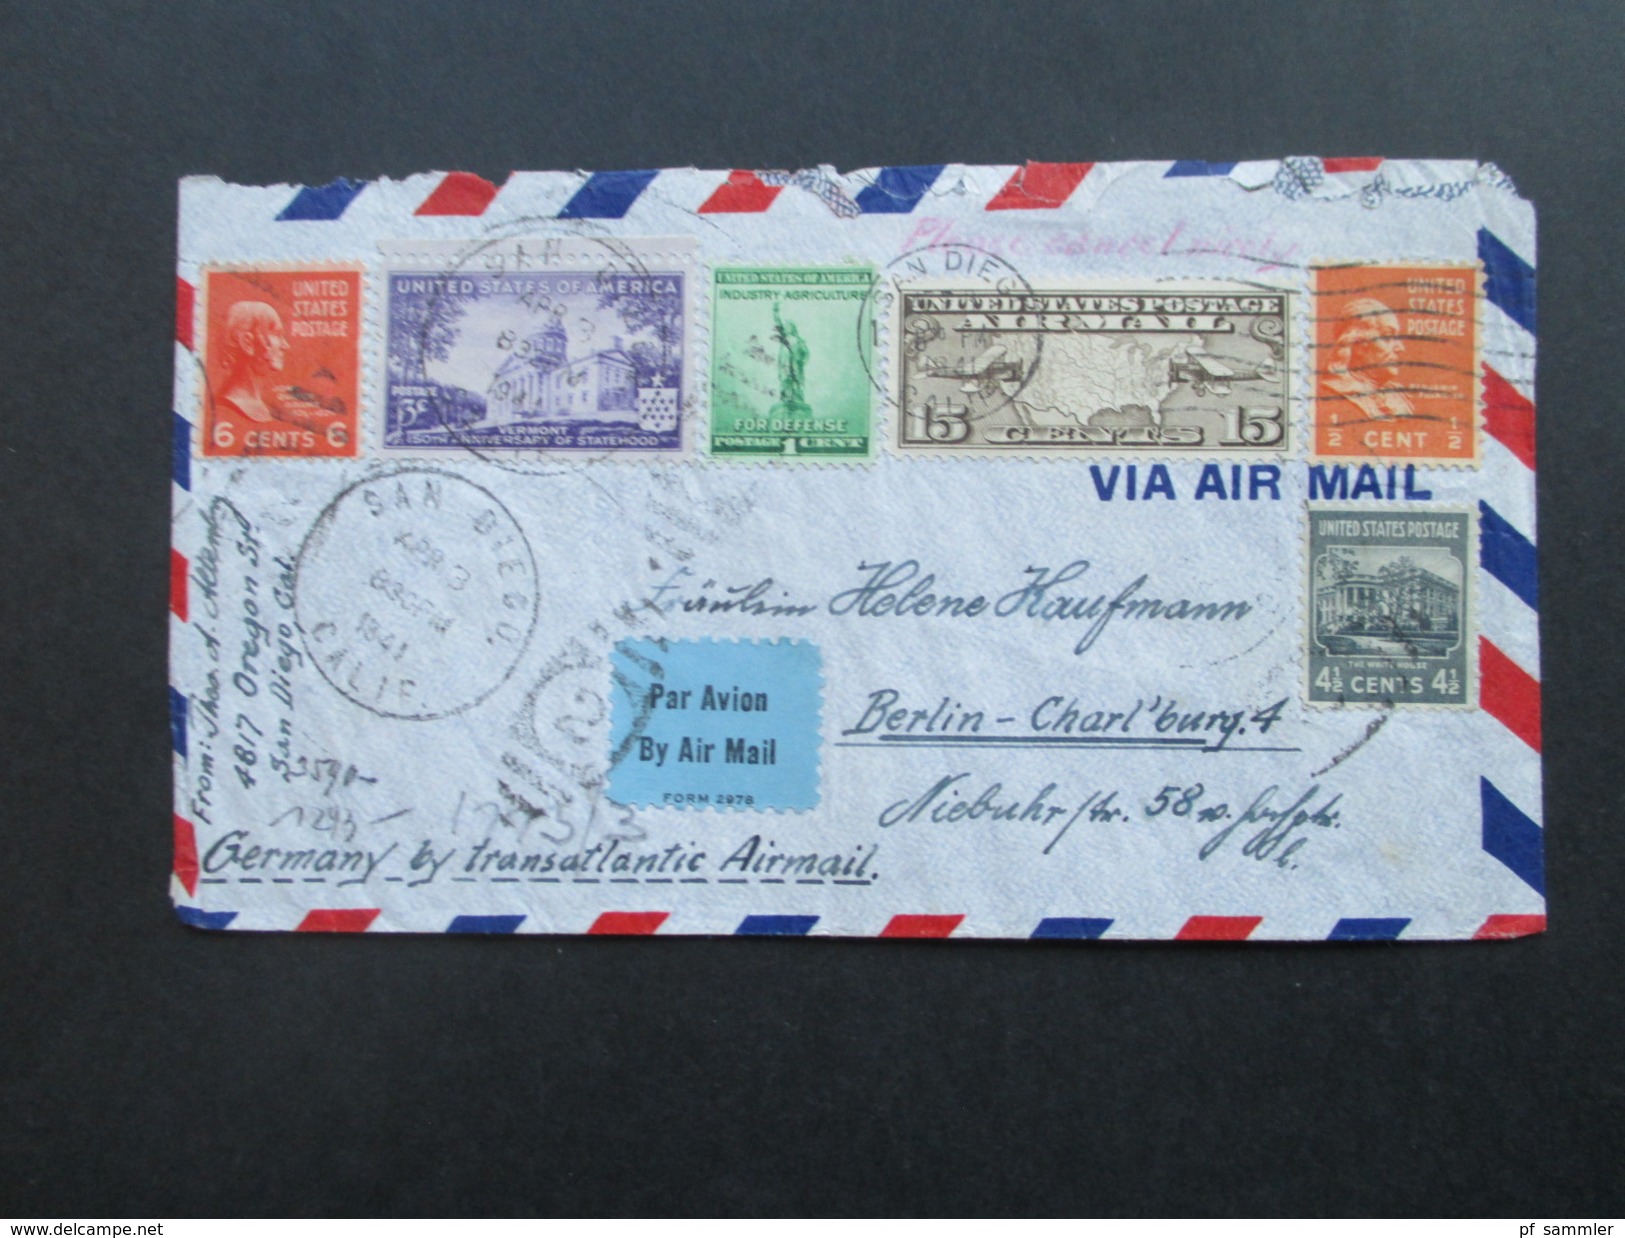 USA 1941 By Transatlantic Airmail. San Diego - Berlin. 3-fach Zensur. Geöffnet Oberkommando Der Wehrmacht. Zensurpost - Covers & Documents